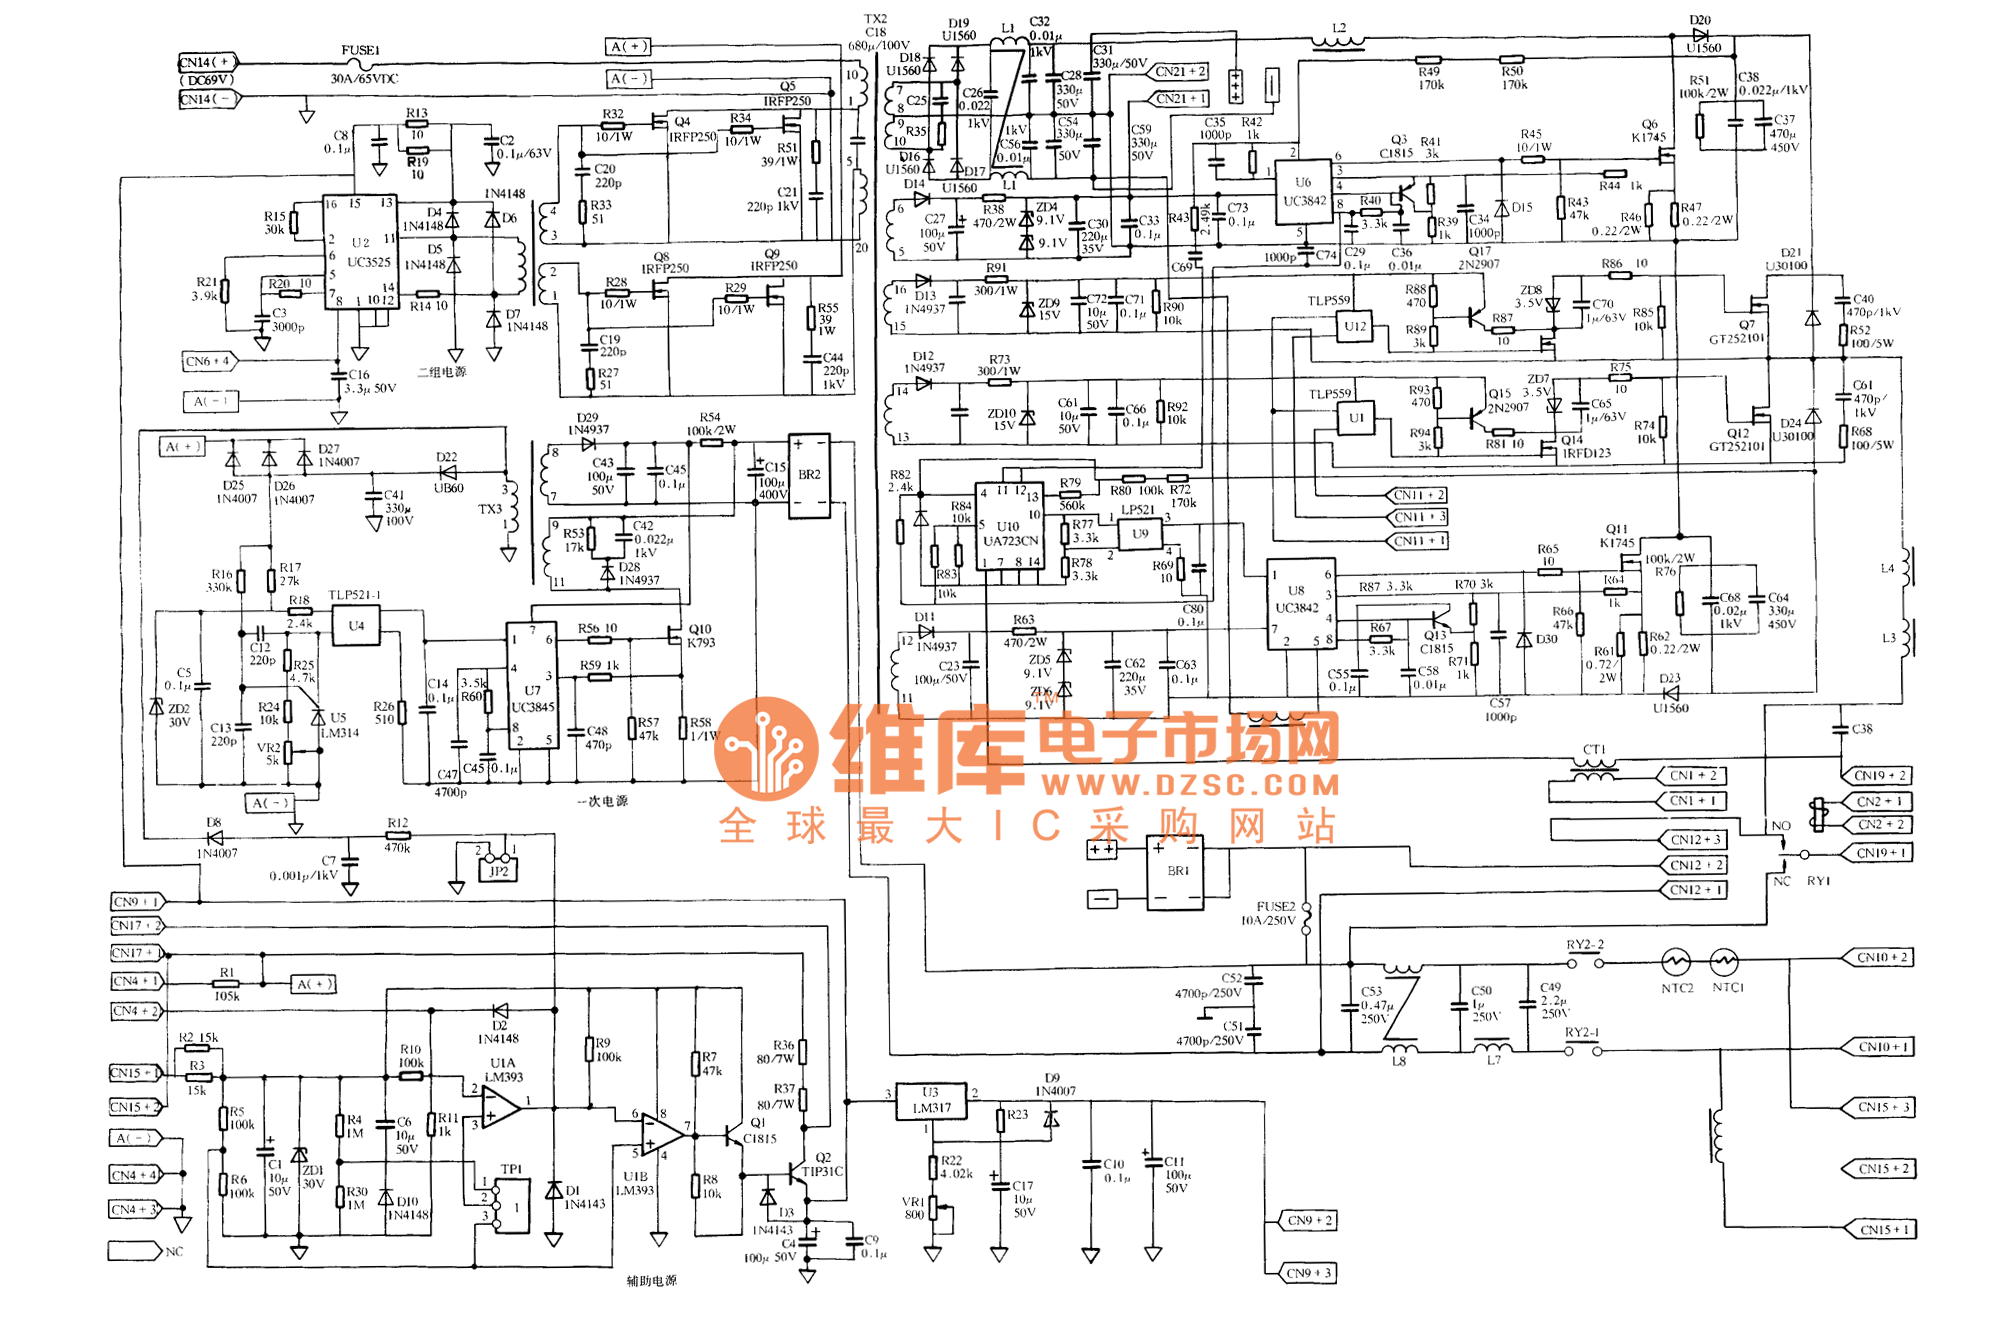 Ups Circuit Diagrams - Fudian Santak 710 Ups Power Driver Board Schematic - Ups Circuit Diagrams